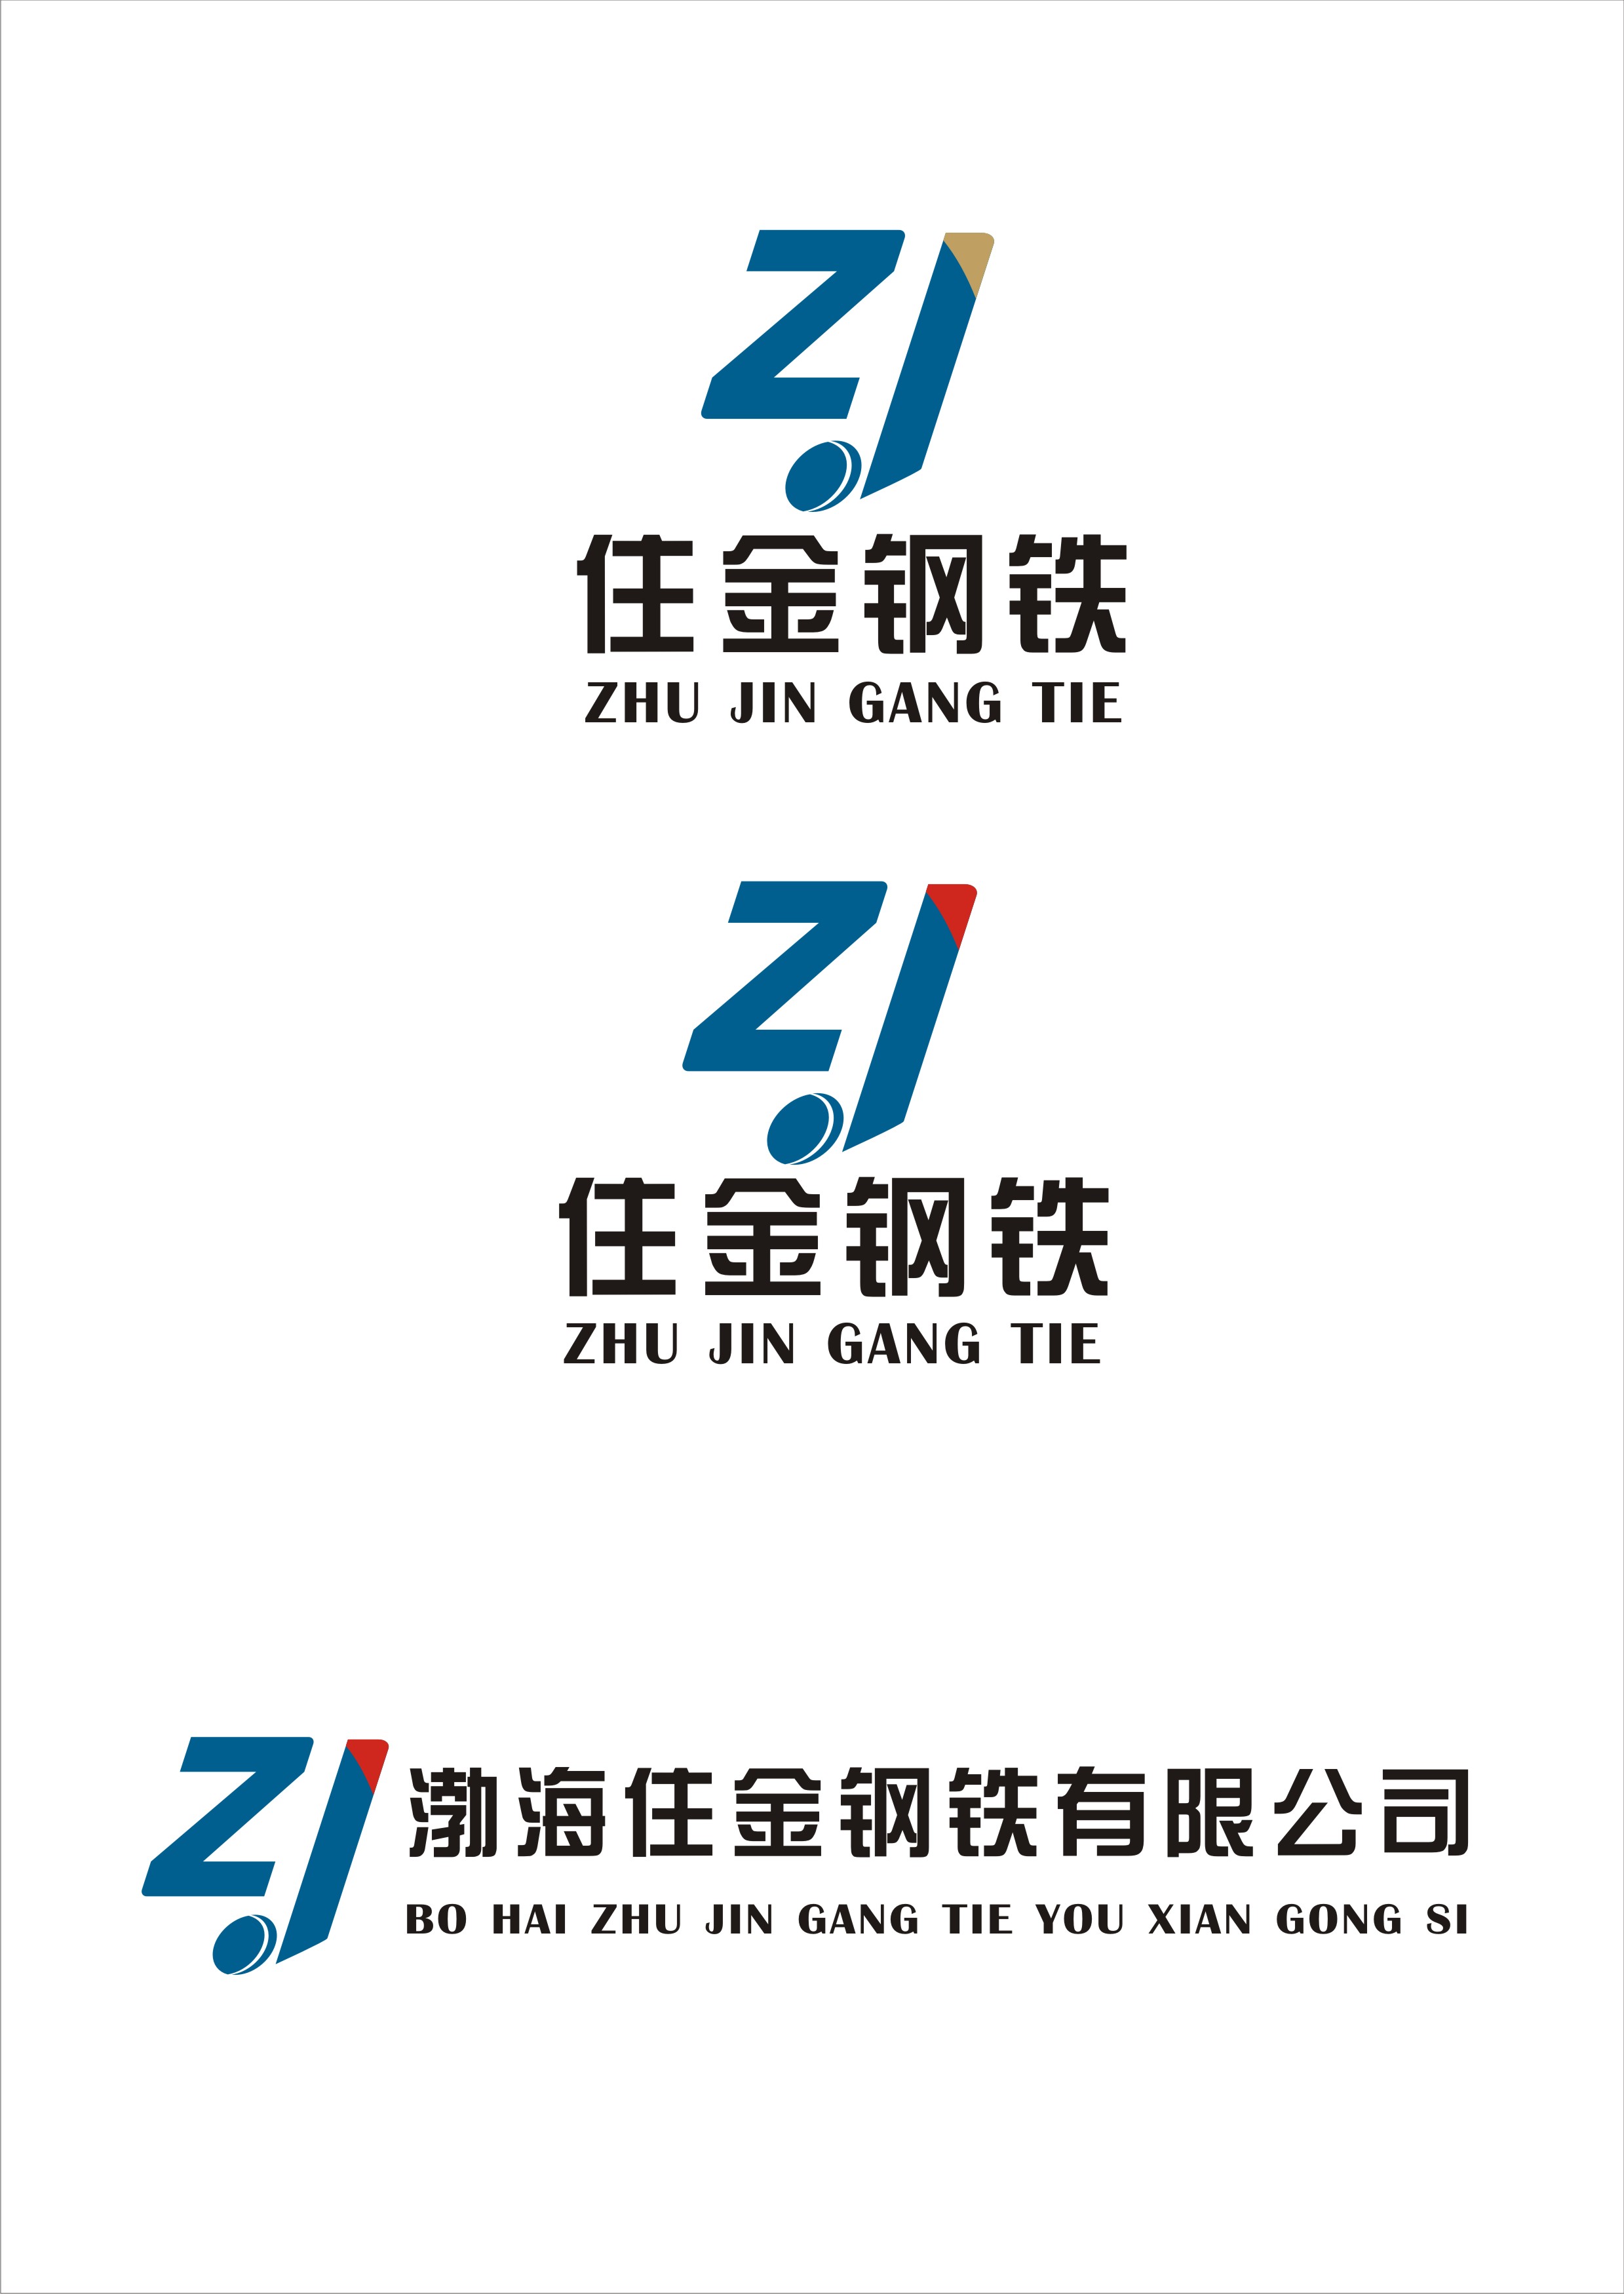 设计渤海住金钢铁有限公司logo标志